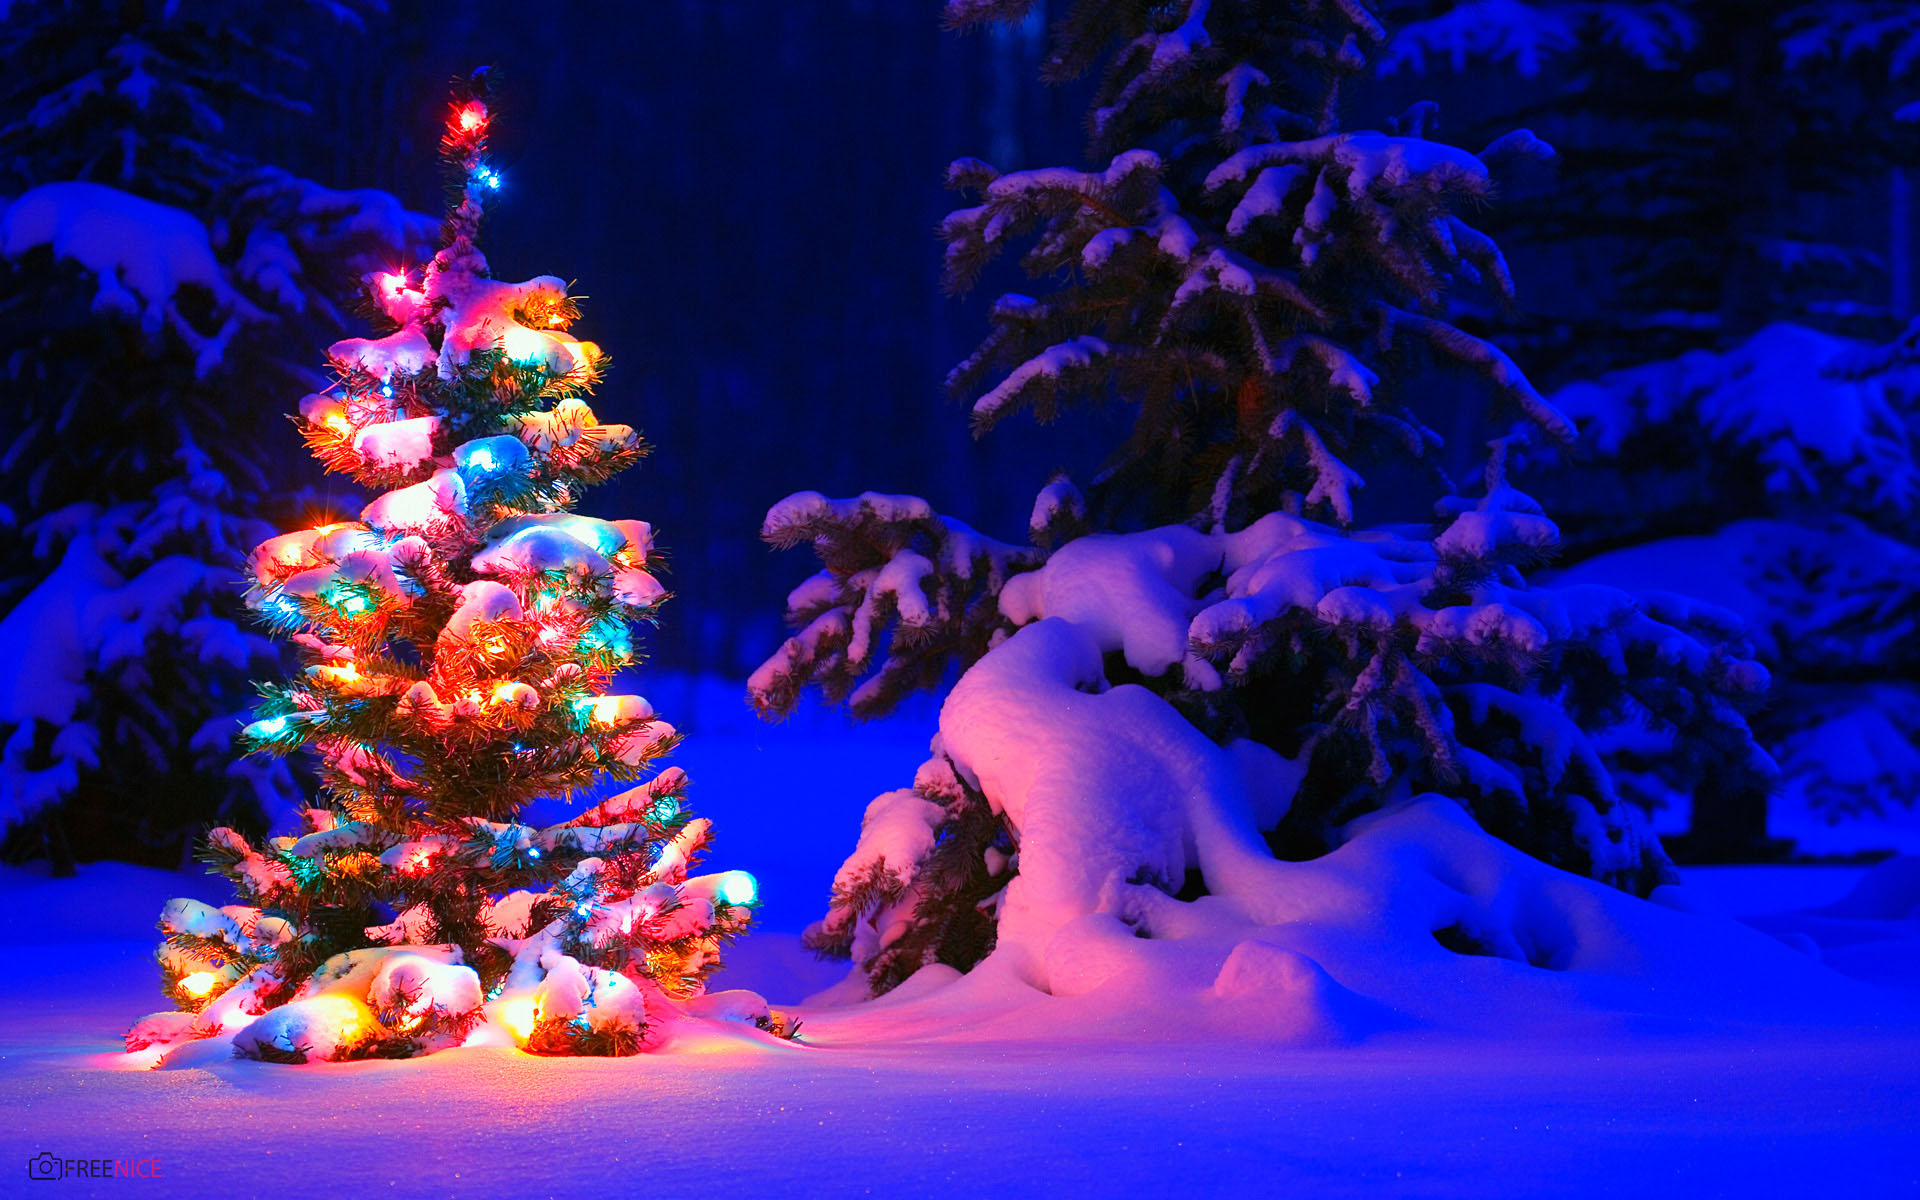 Cây thông Noel lung linh rực rỡ sẽ mang đến cho bạn những trải nghiệm thú vị trong việc khám phá những thiết kế và kiểu dáng đầy màu sắc của các cây thông Noel đẹp nhất. Từ chiếc đèn lấp lánh tới những chi tiết cầu kỳ, bạn sẽ có cảm giác như đang bước vào một thế giới mơ mộng.